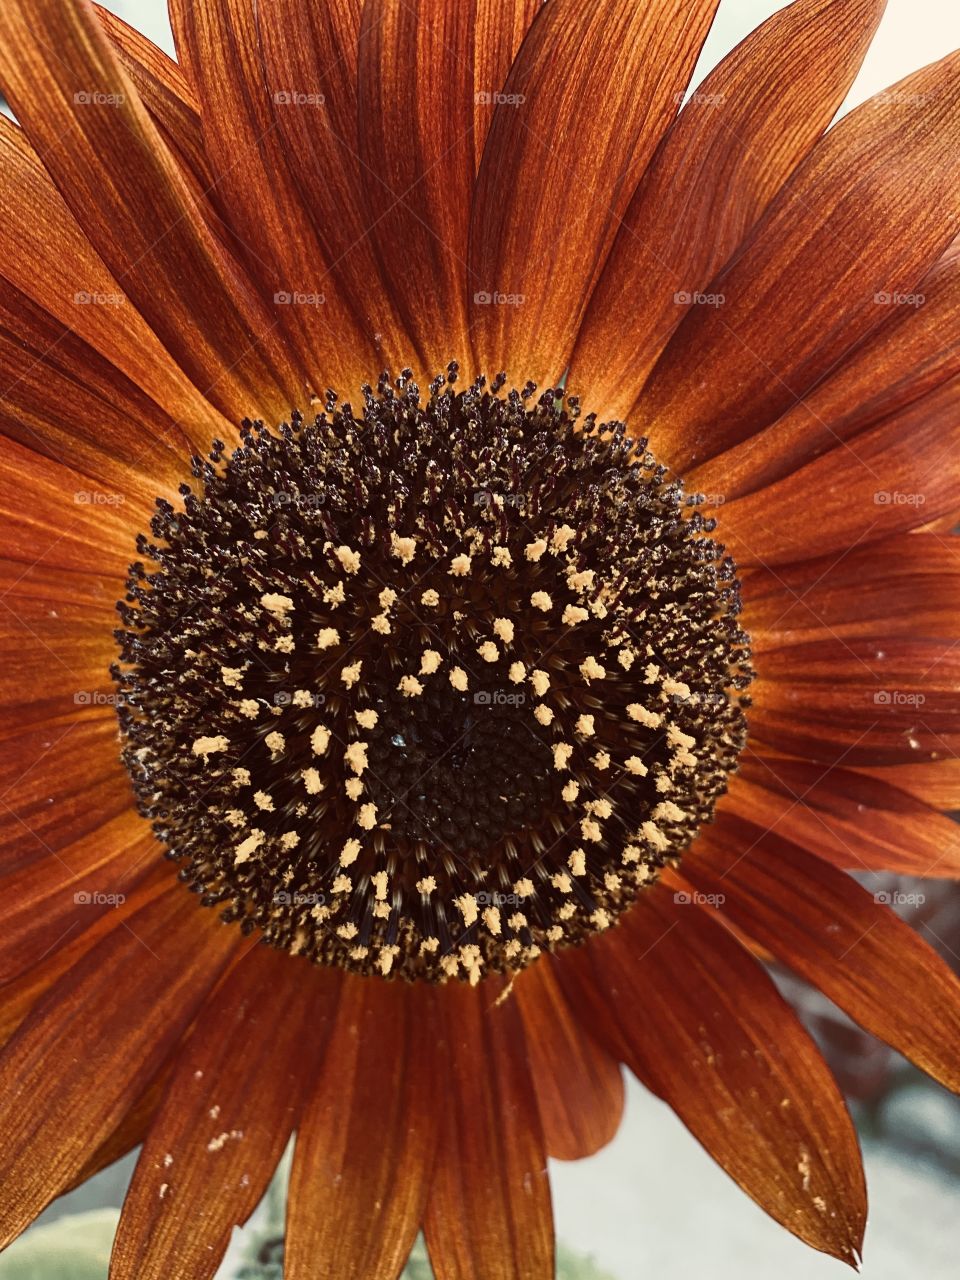 Daisy up close / pollen